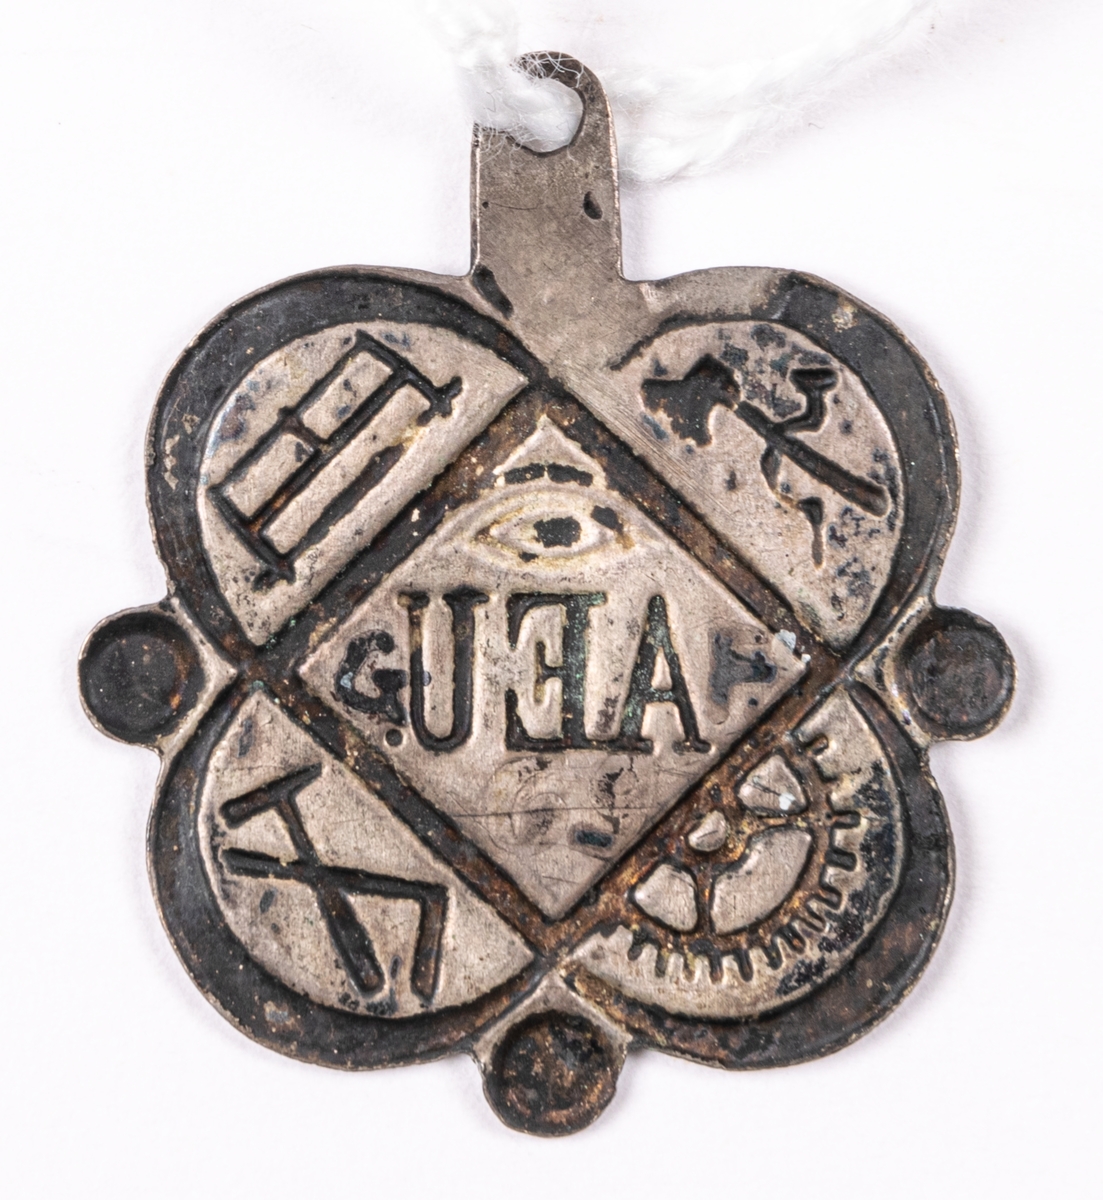 Föreningestecken i pressat silver, för okänt sällskap. Med emblem för olika hantverk, så som yxa, såg, hammare, vinkelhake och kugghjul, samt AEU.